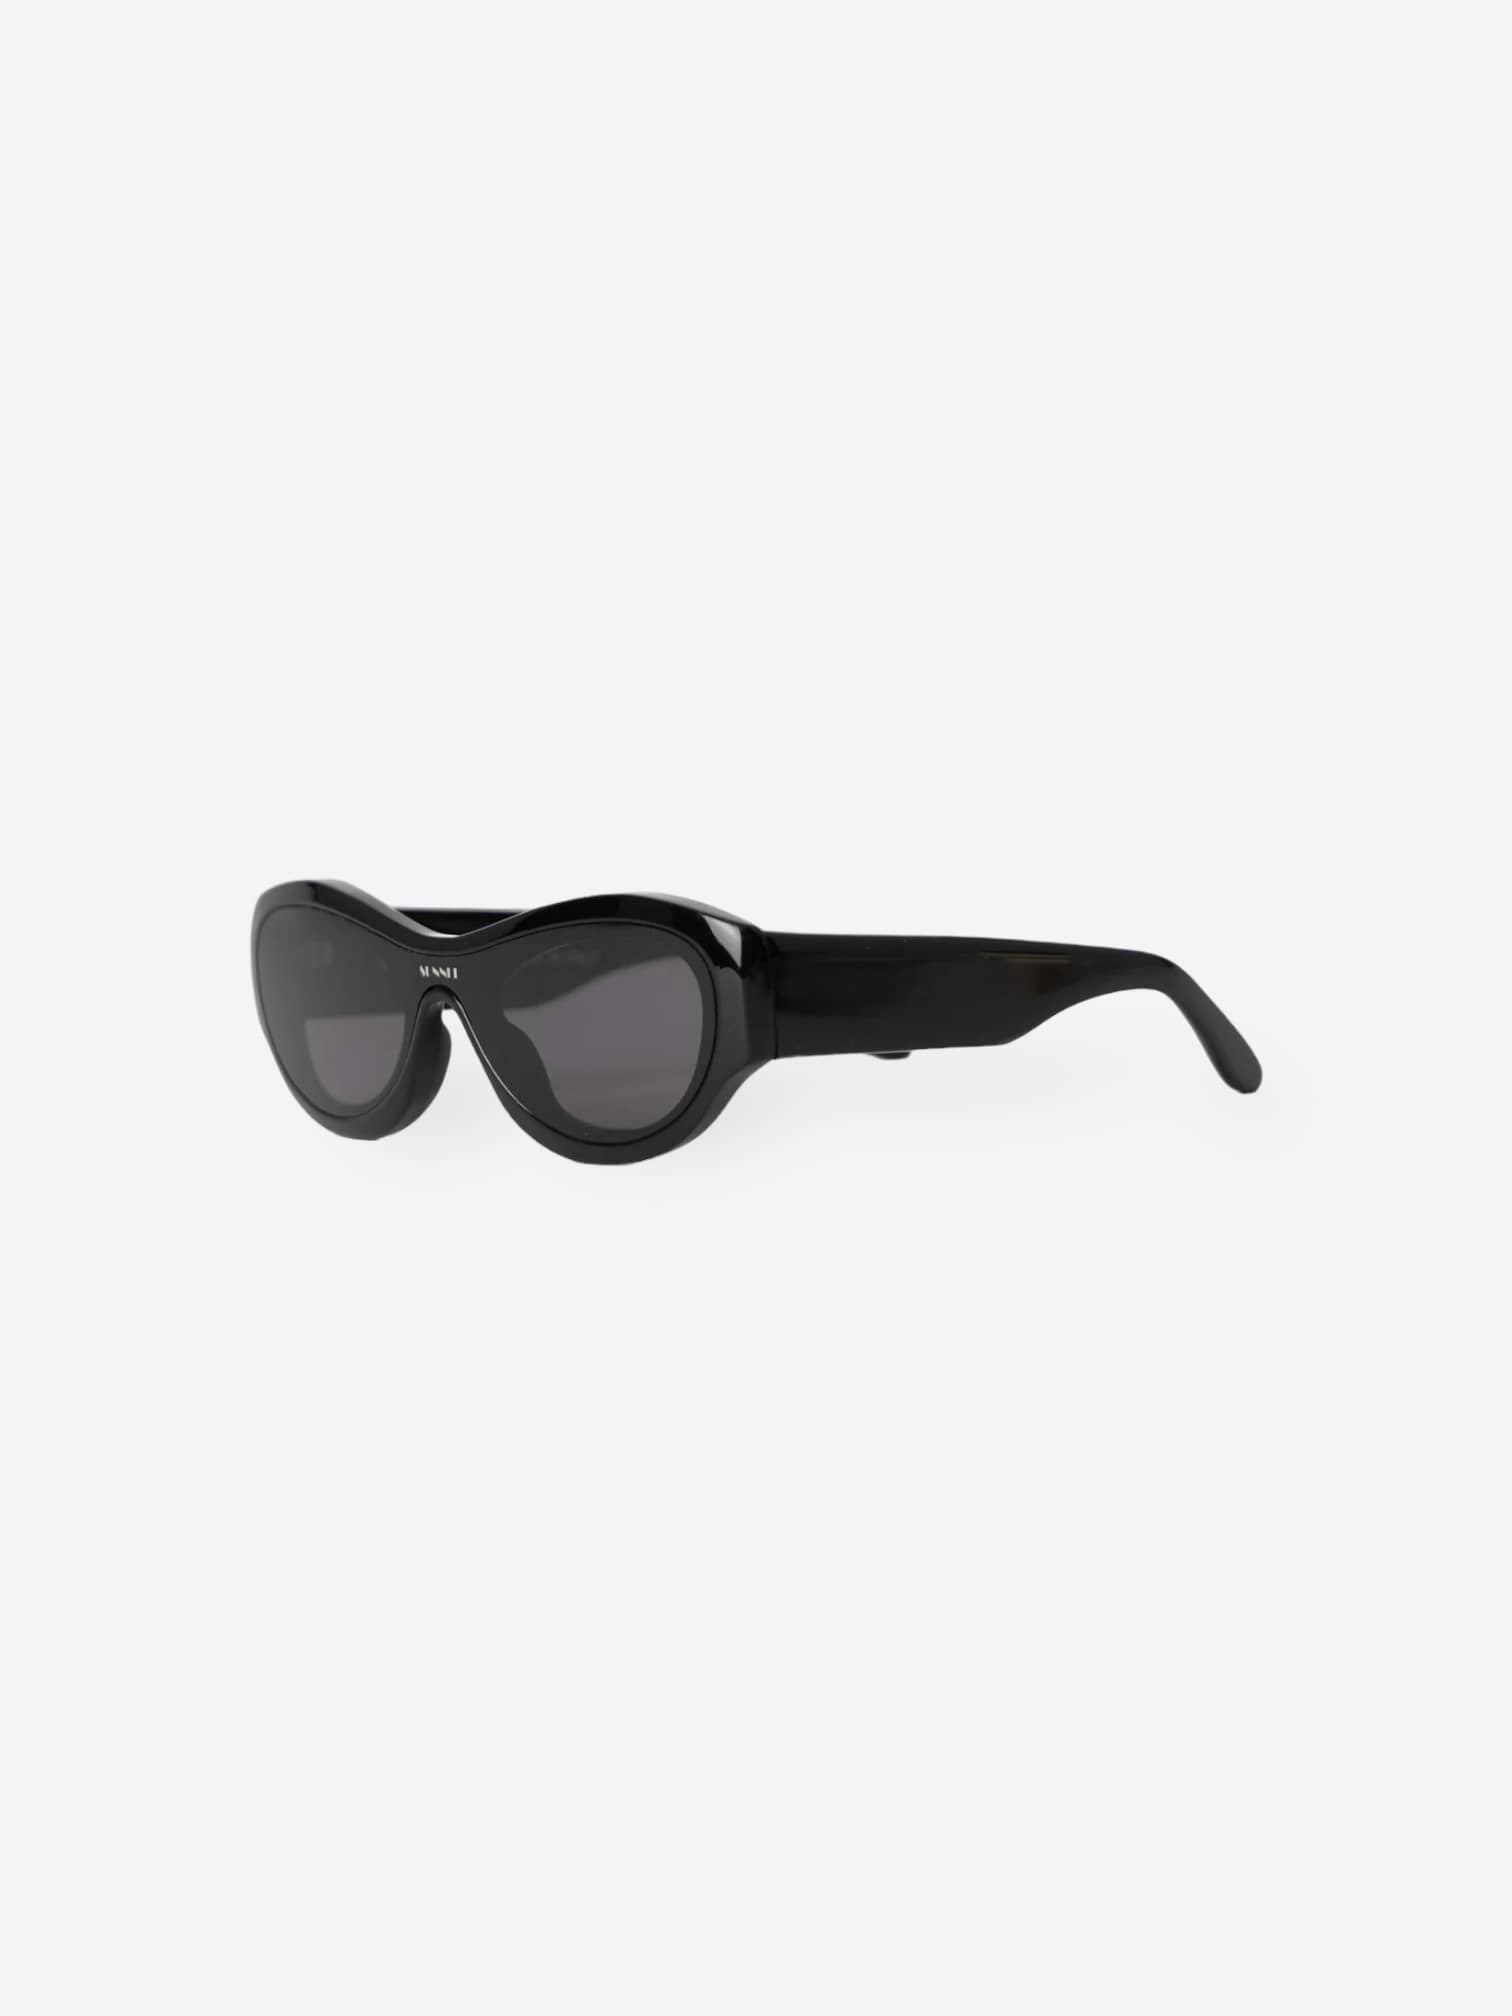 Sunnei Black Prototipo 5 Sunglasses | HOMME+ Ibiza menswear store